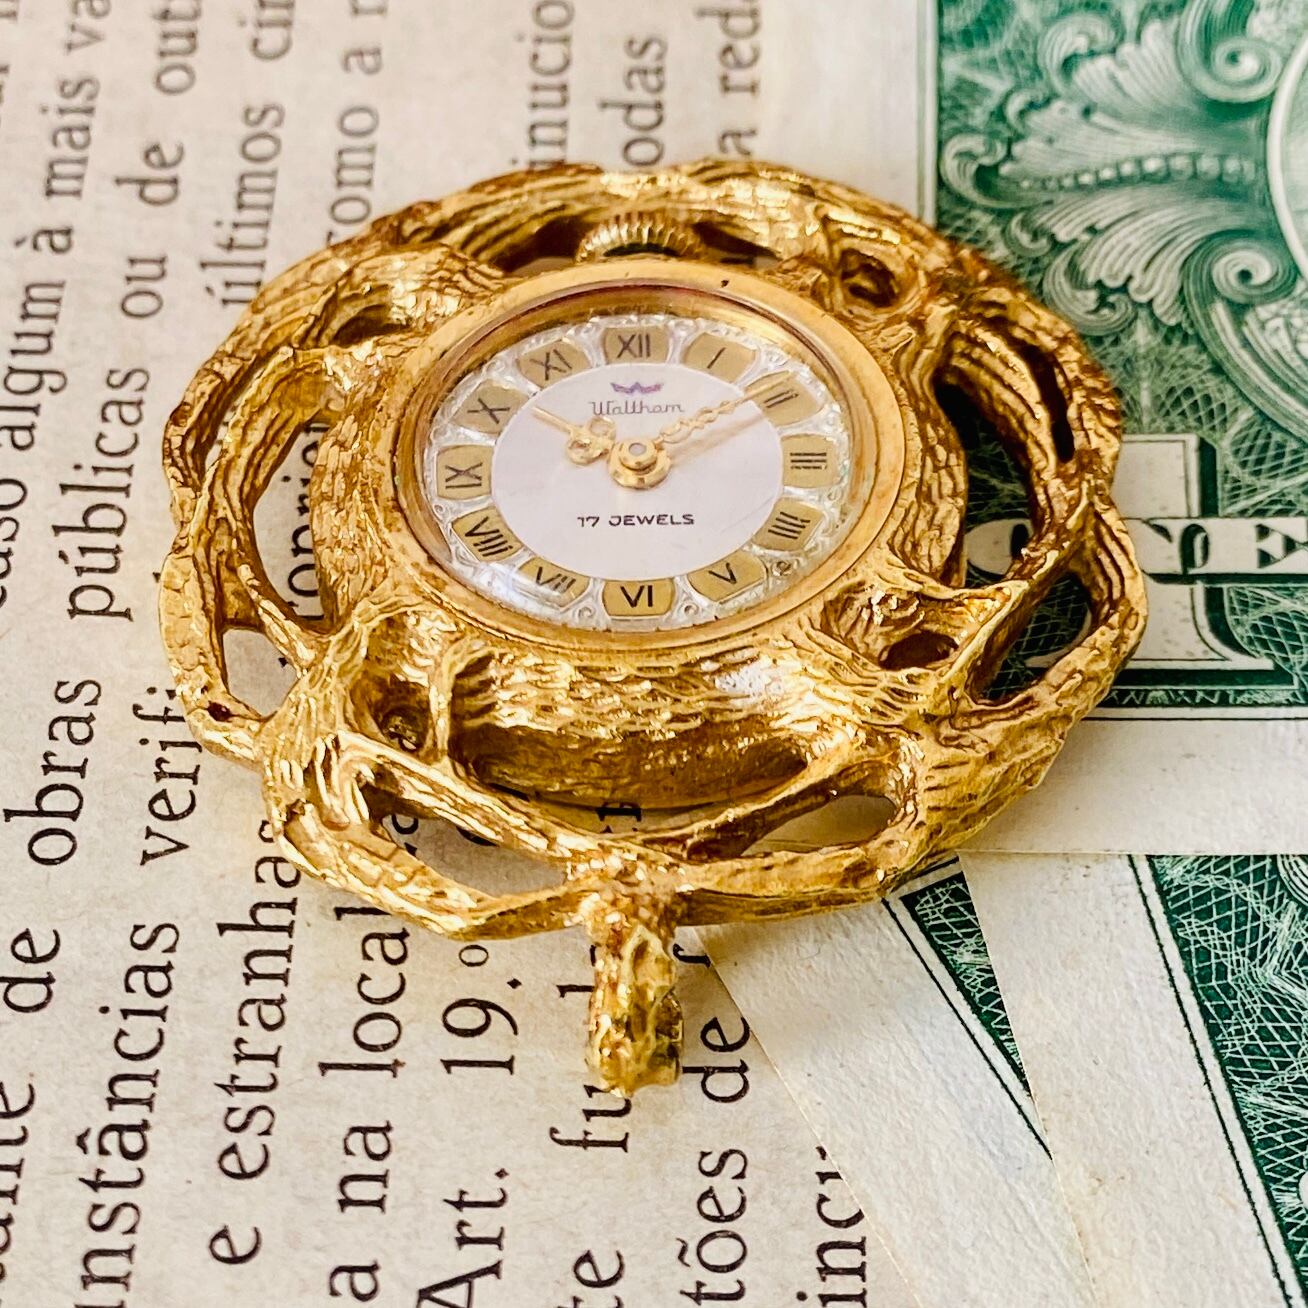 【高級懐中時計】美品 ウォルサム 17石 メンズ レディース ビンテージアナログ